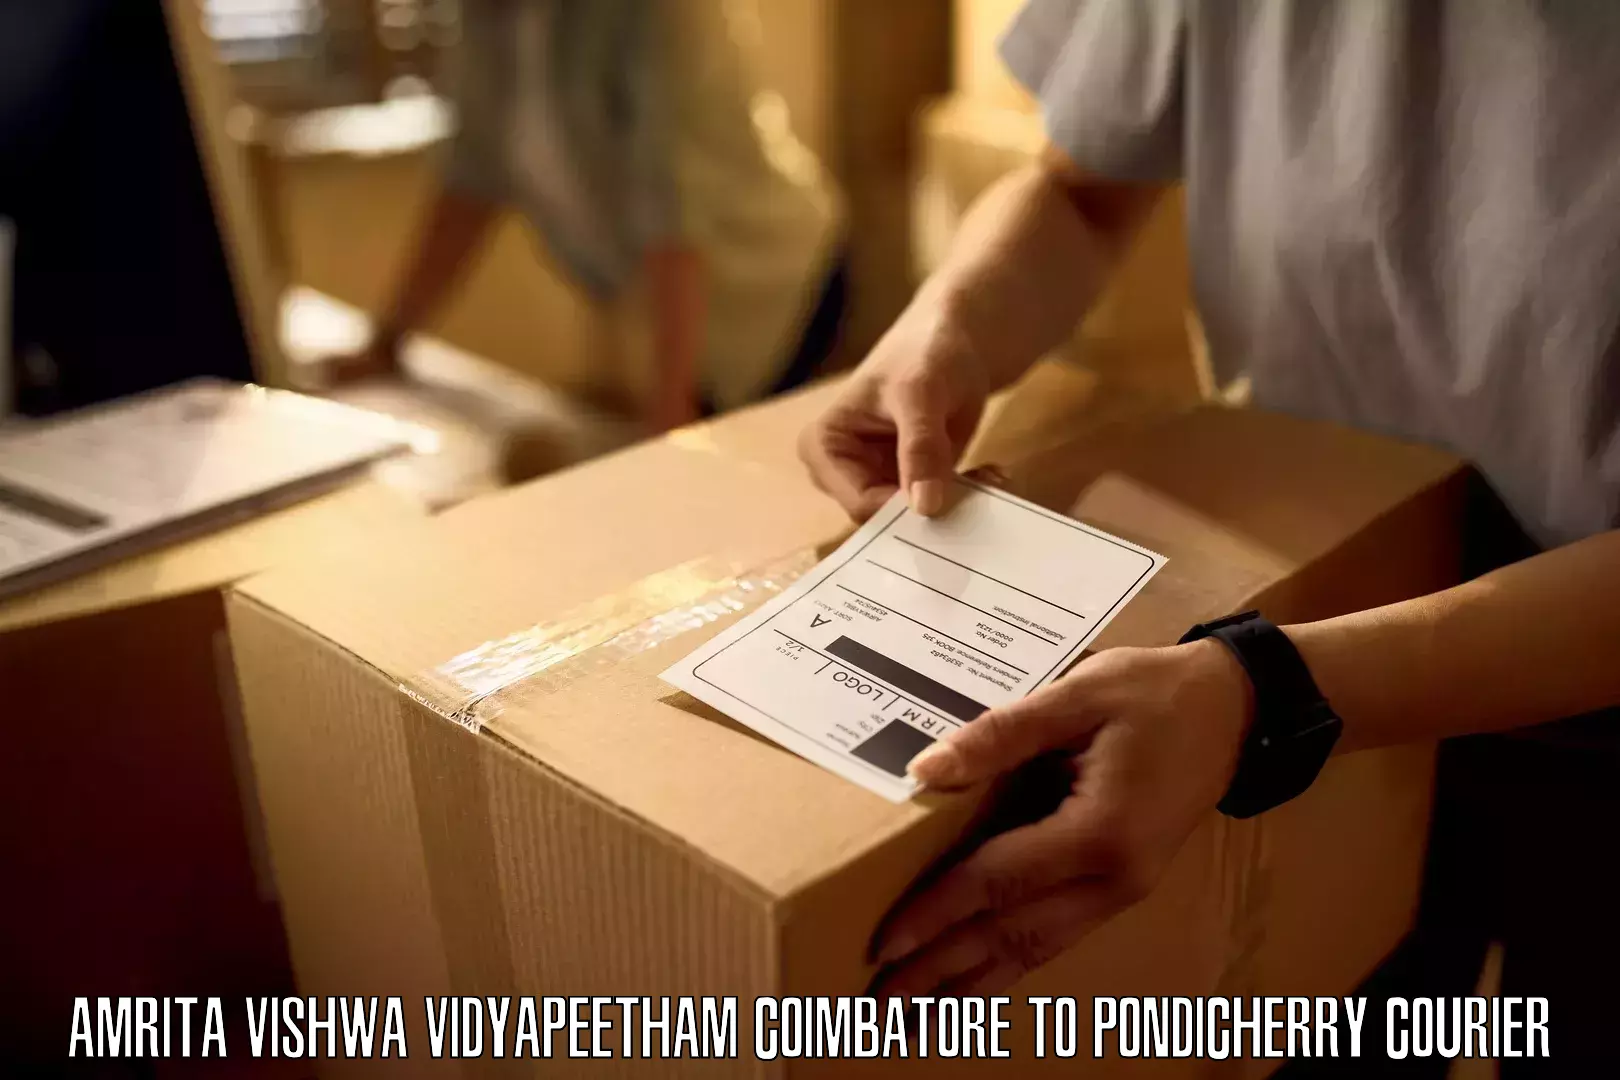 Modern courier technology Amrita Vishwa Vidyapeetham Coimbatore to Metttupalayam